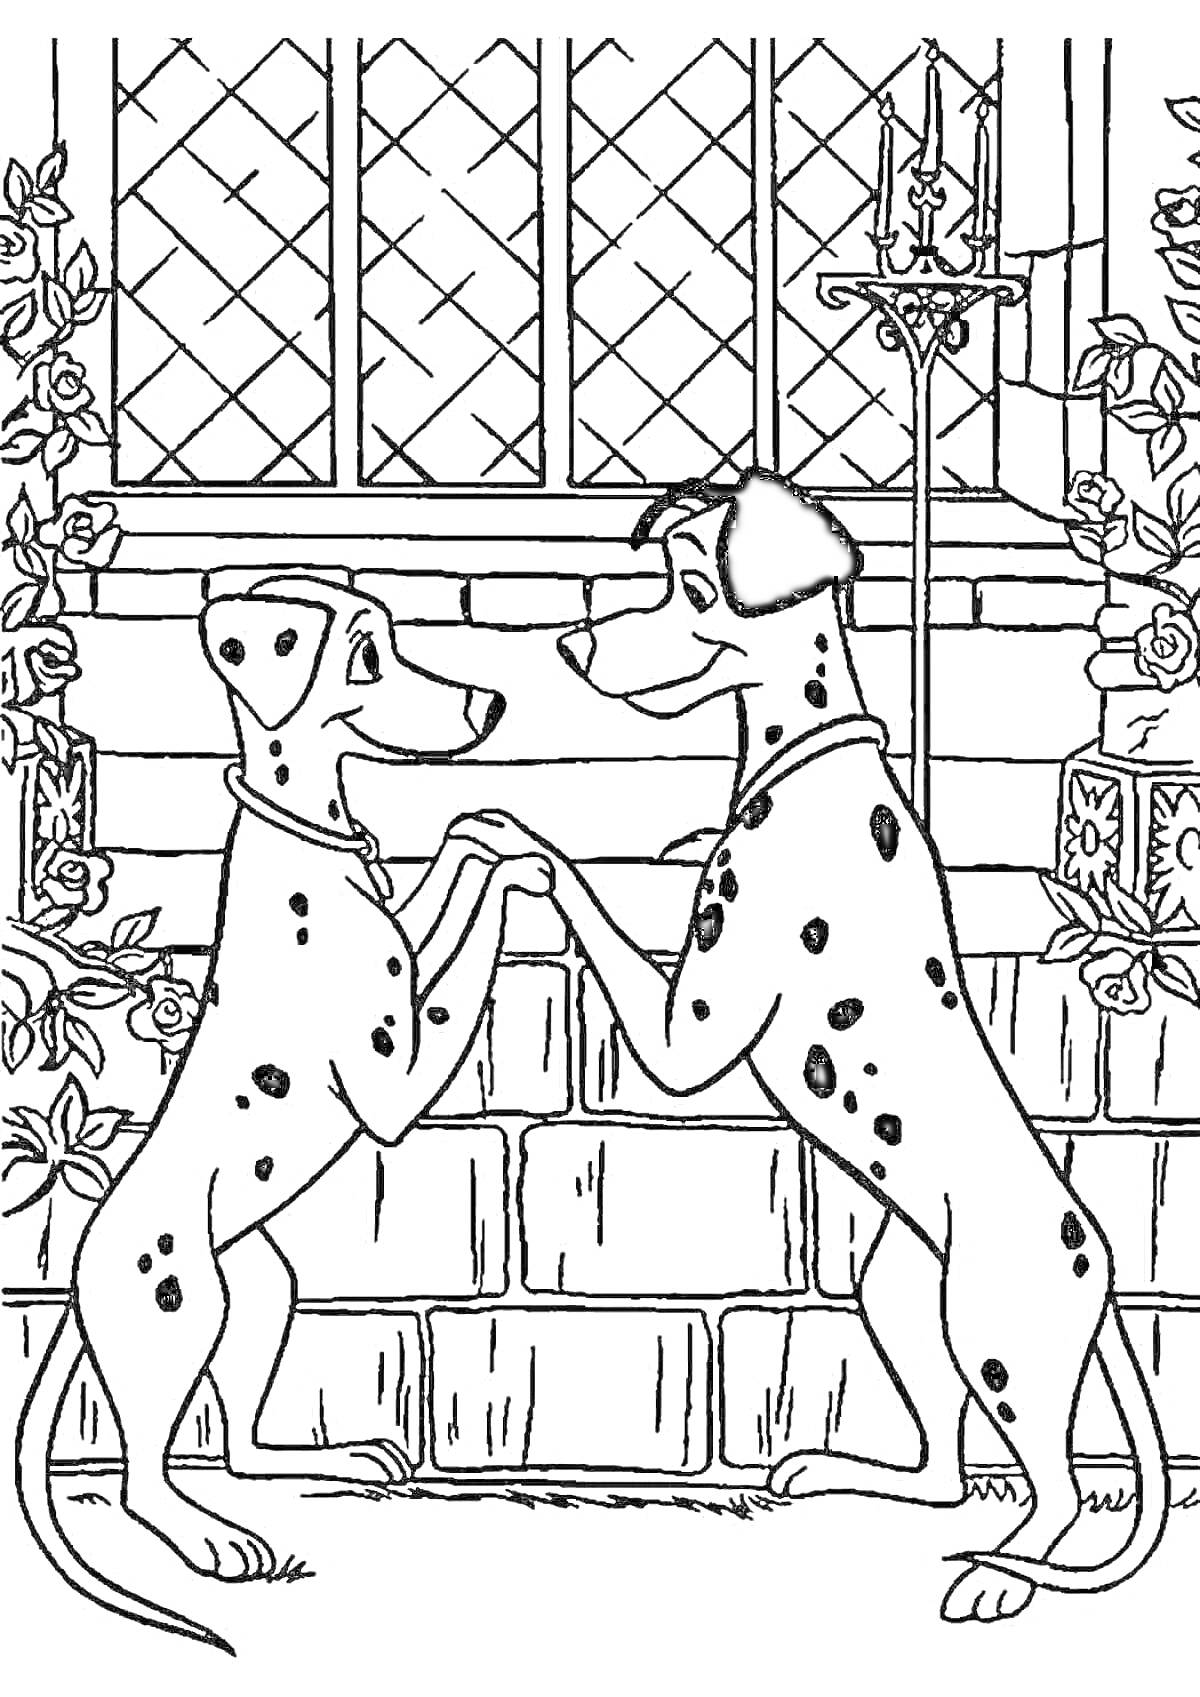 Раскраска Два далматинца у кирпичной стены возле окна, окружённые розами и кованным фонарём